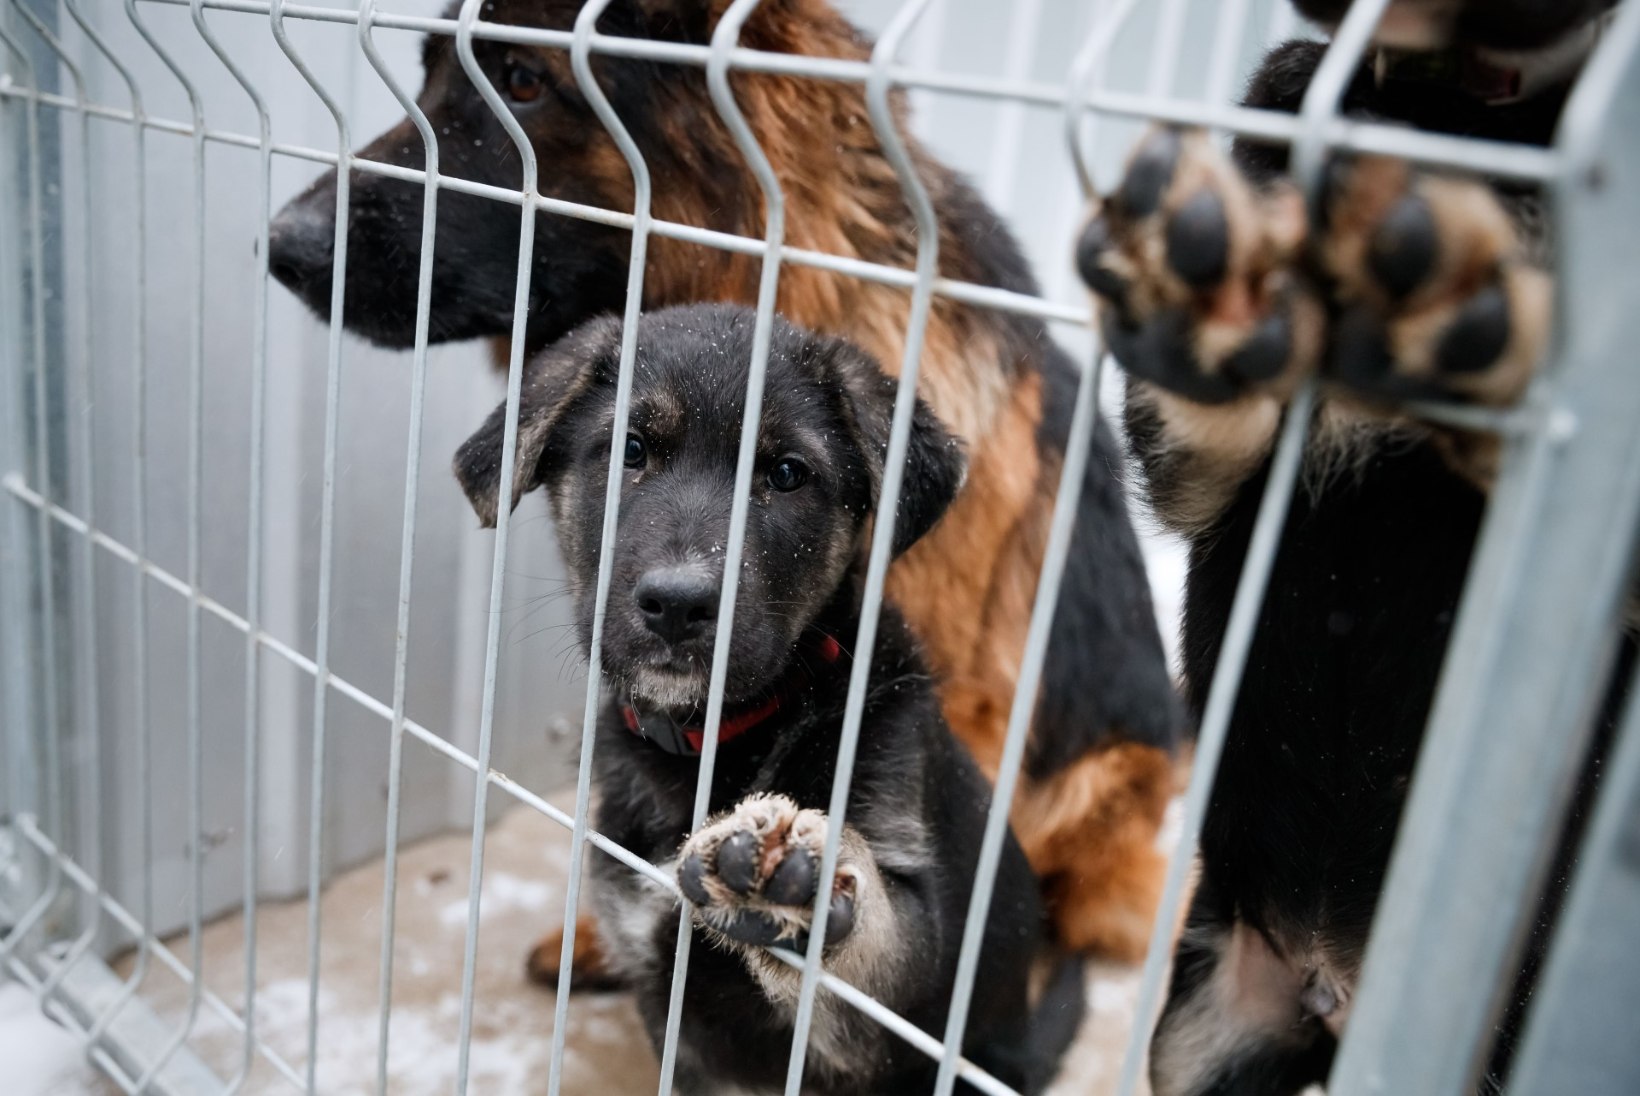 Kõik loomasõbrad oodatud! Tallinna loomade varjupaik tähistab nädalavahetusel kolmandat sünnipäeva